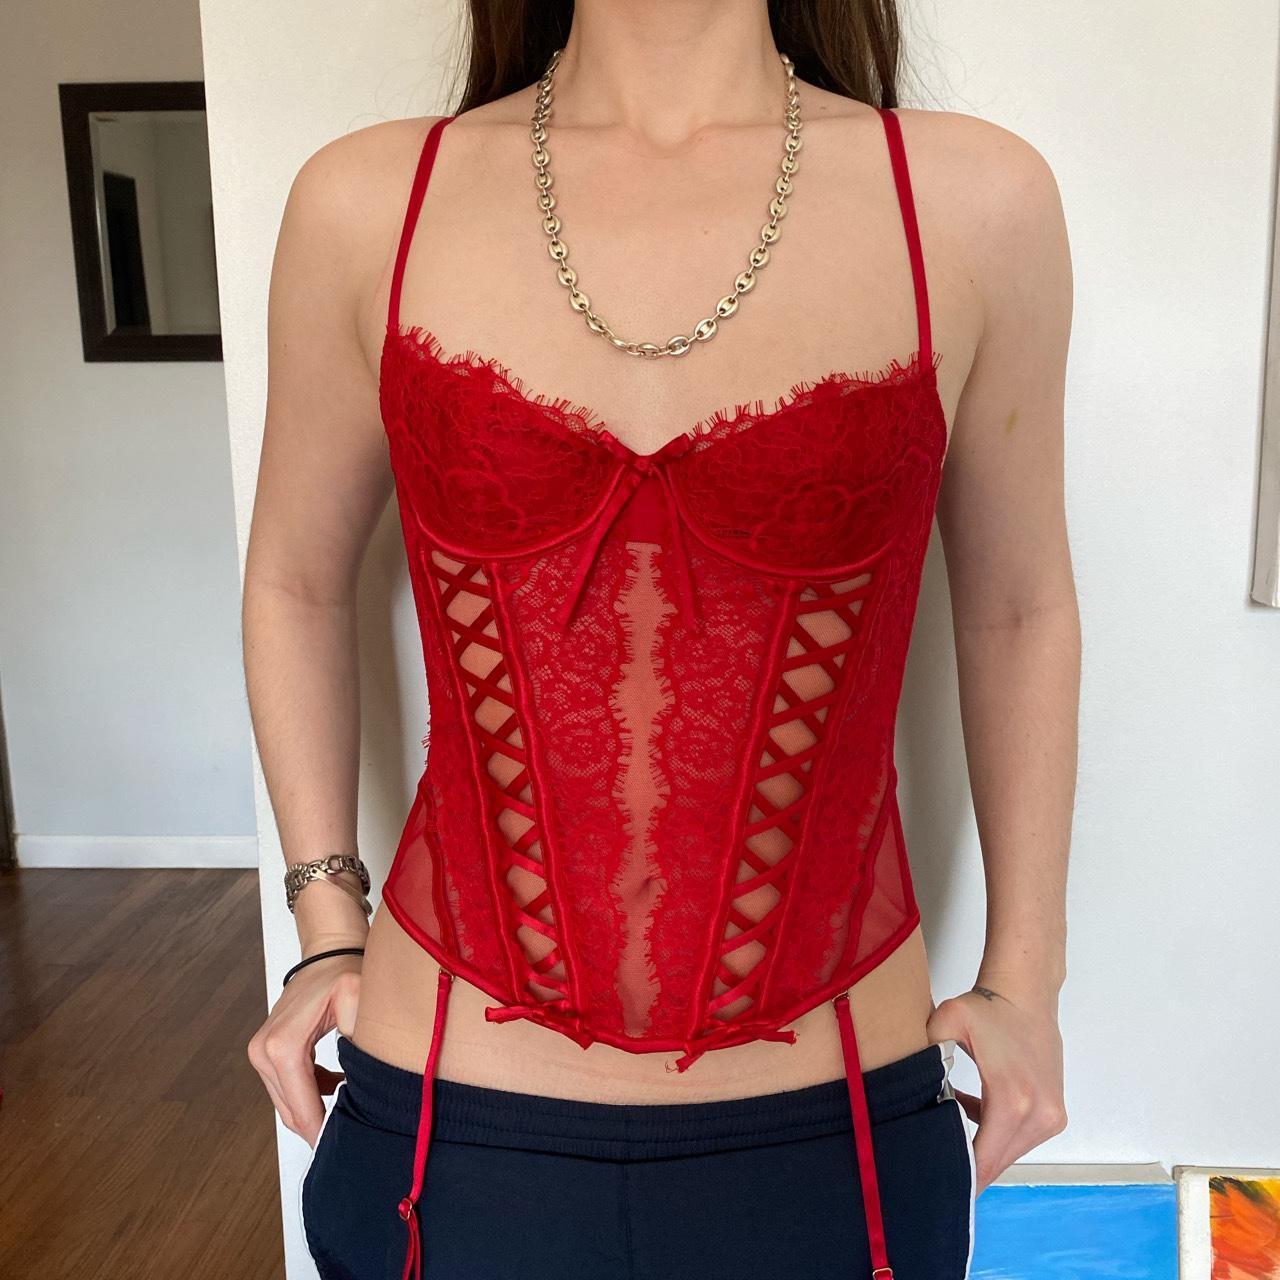 Red corset - Depop